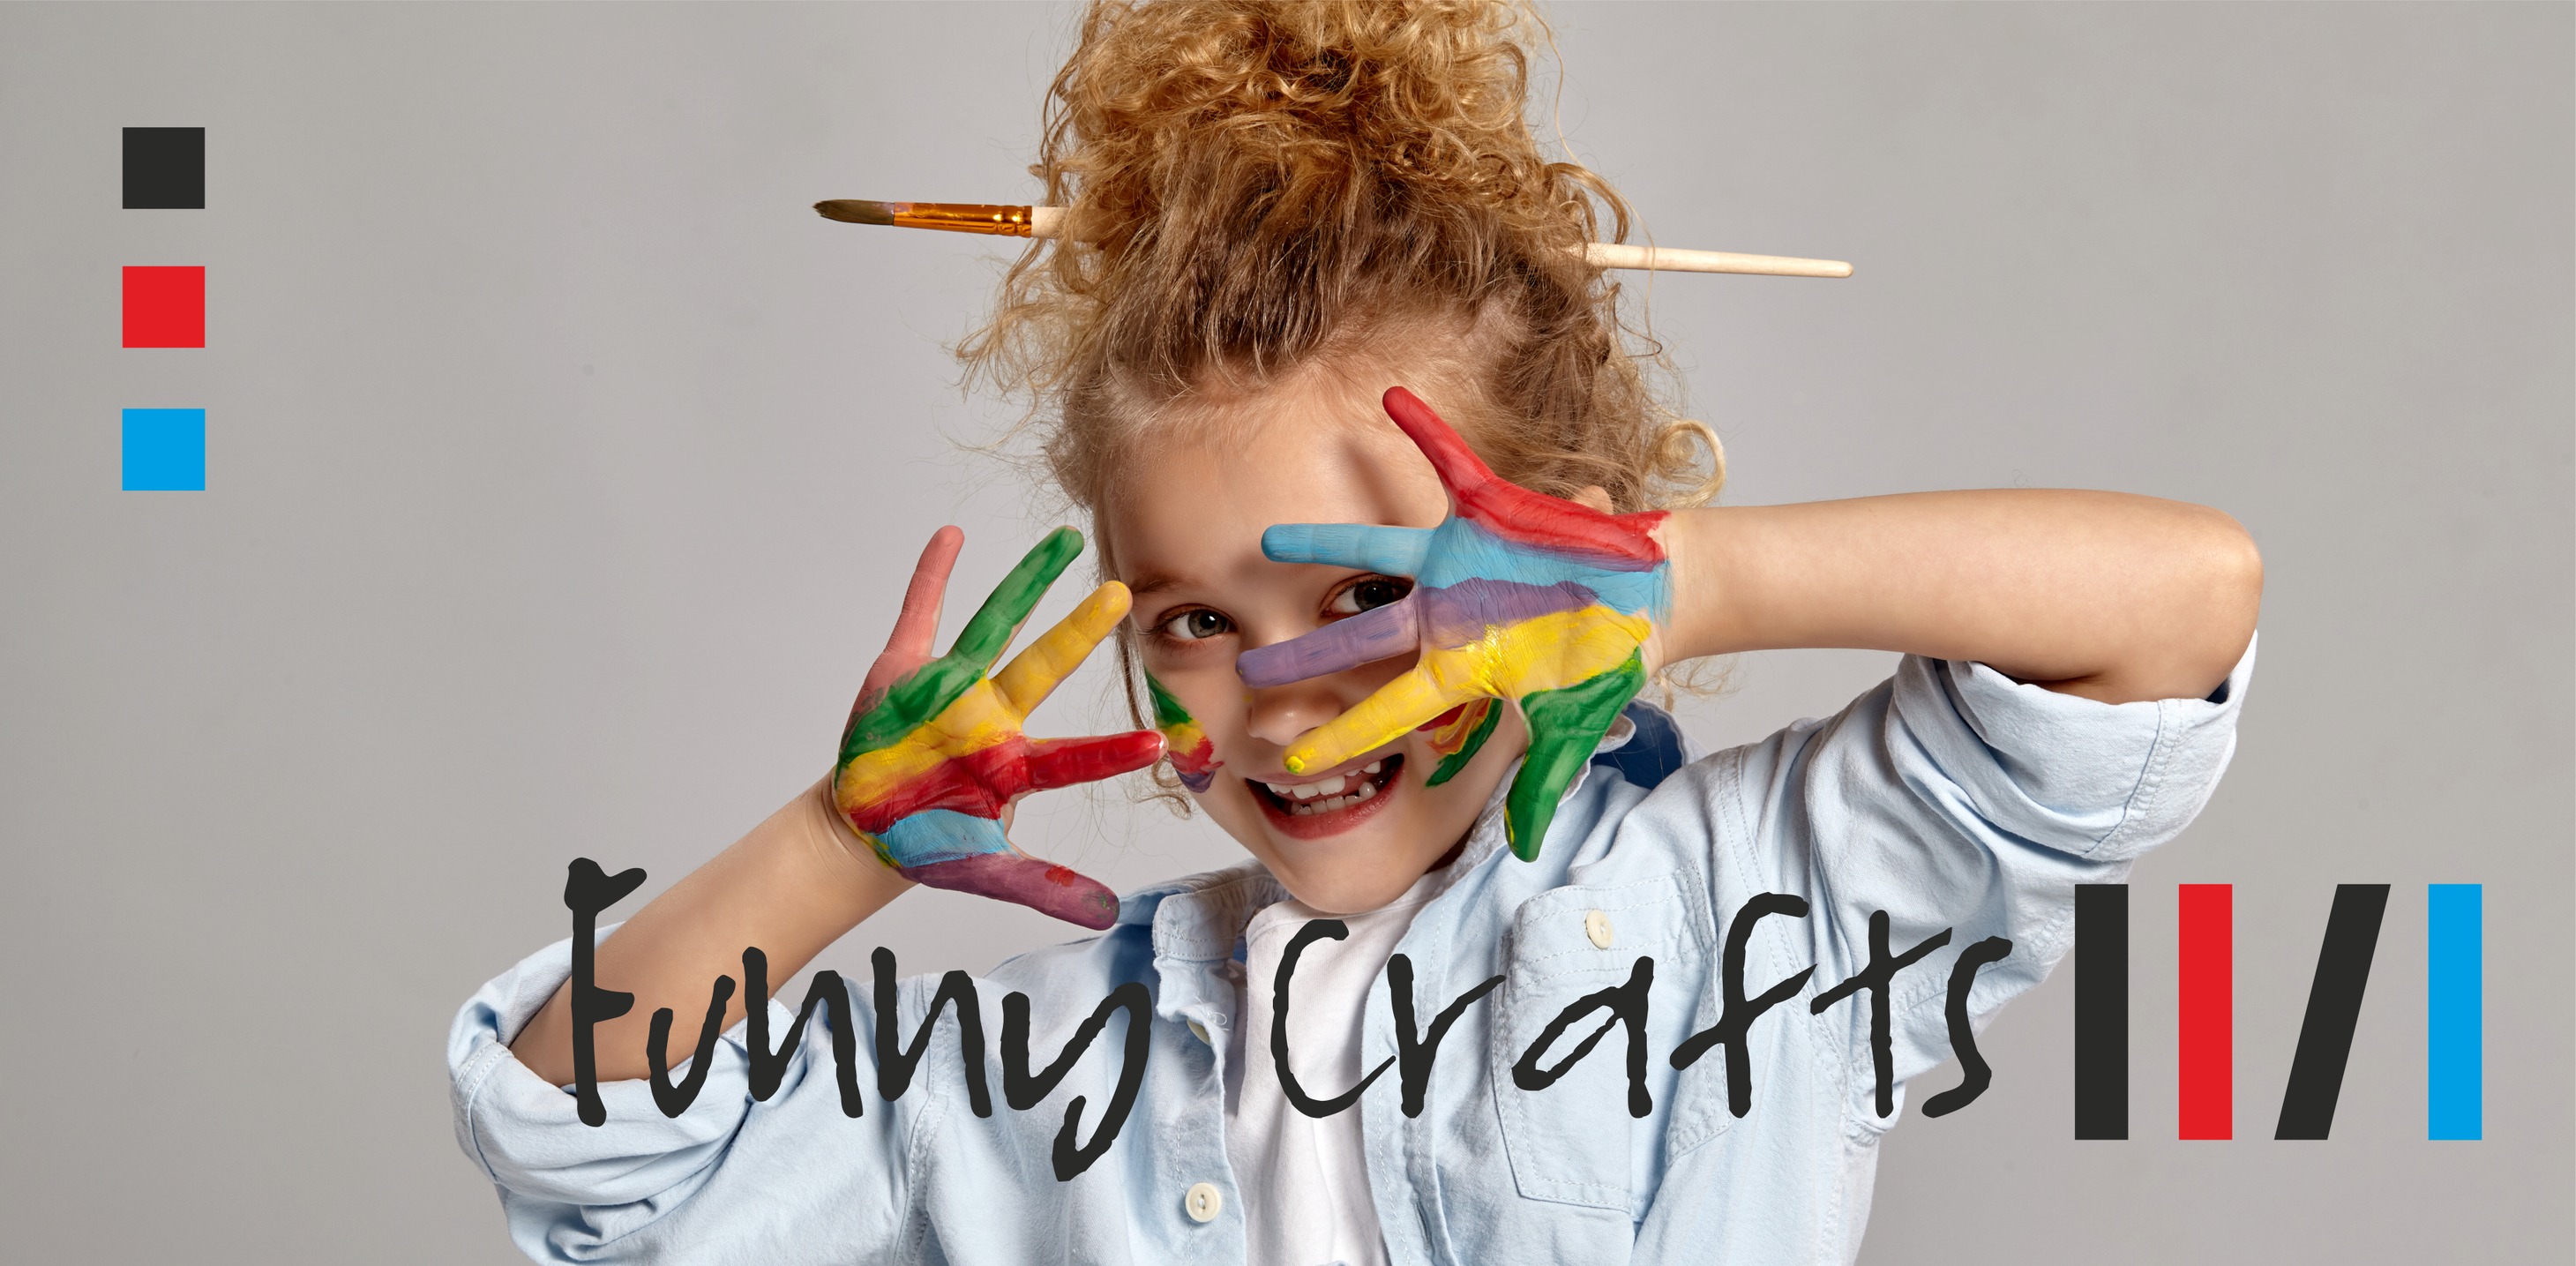 Grafika z dzieckiem pomazanym farbami reklamująca Funny Crafts – creative worshops for children.